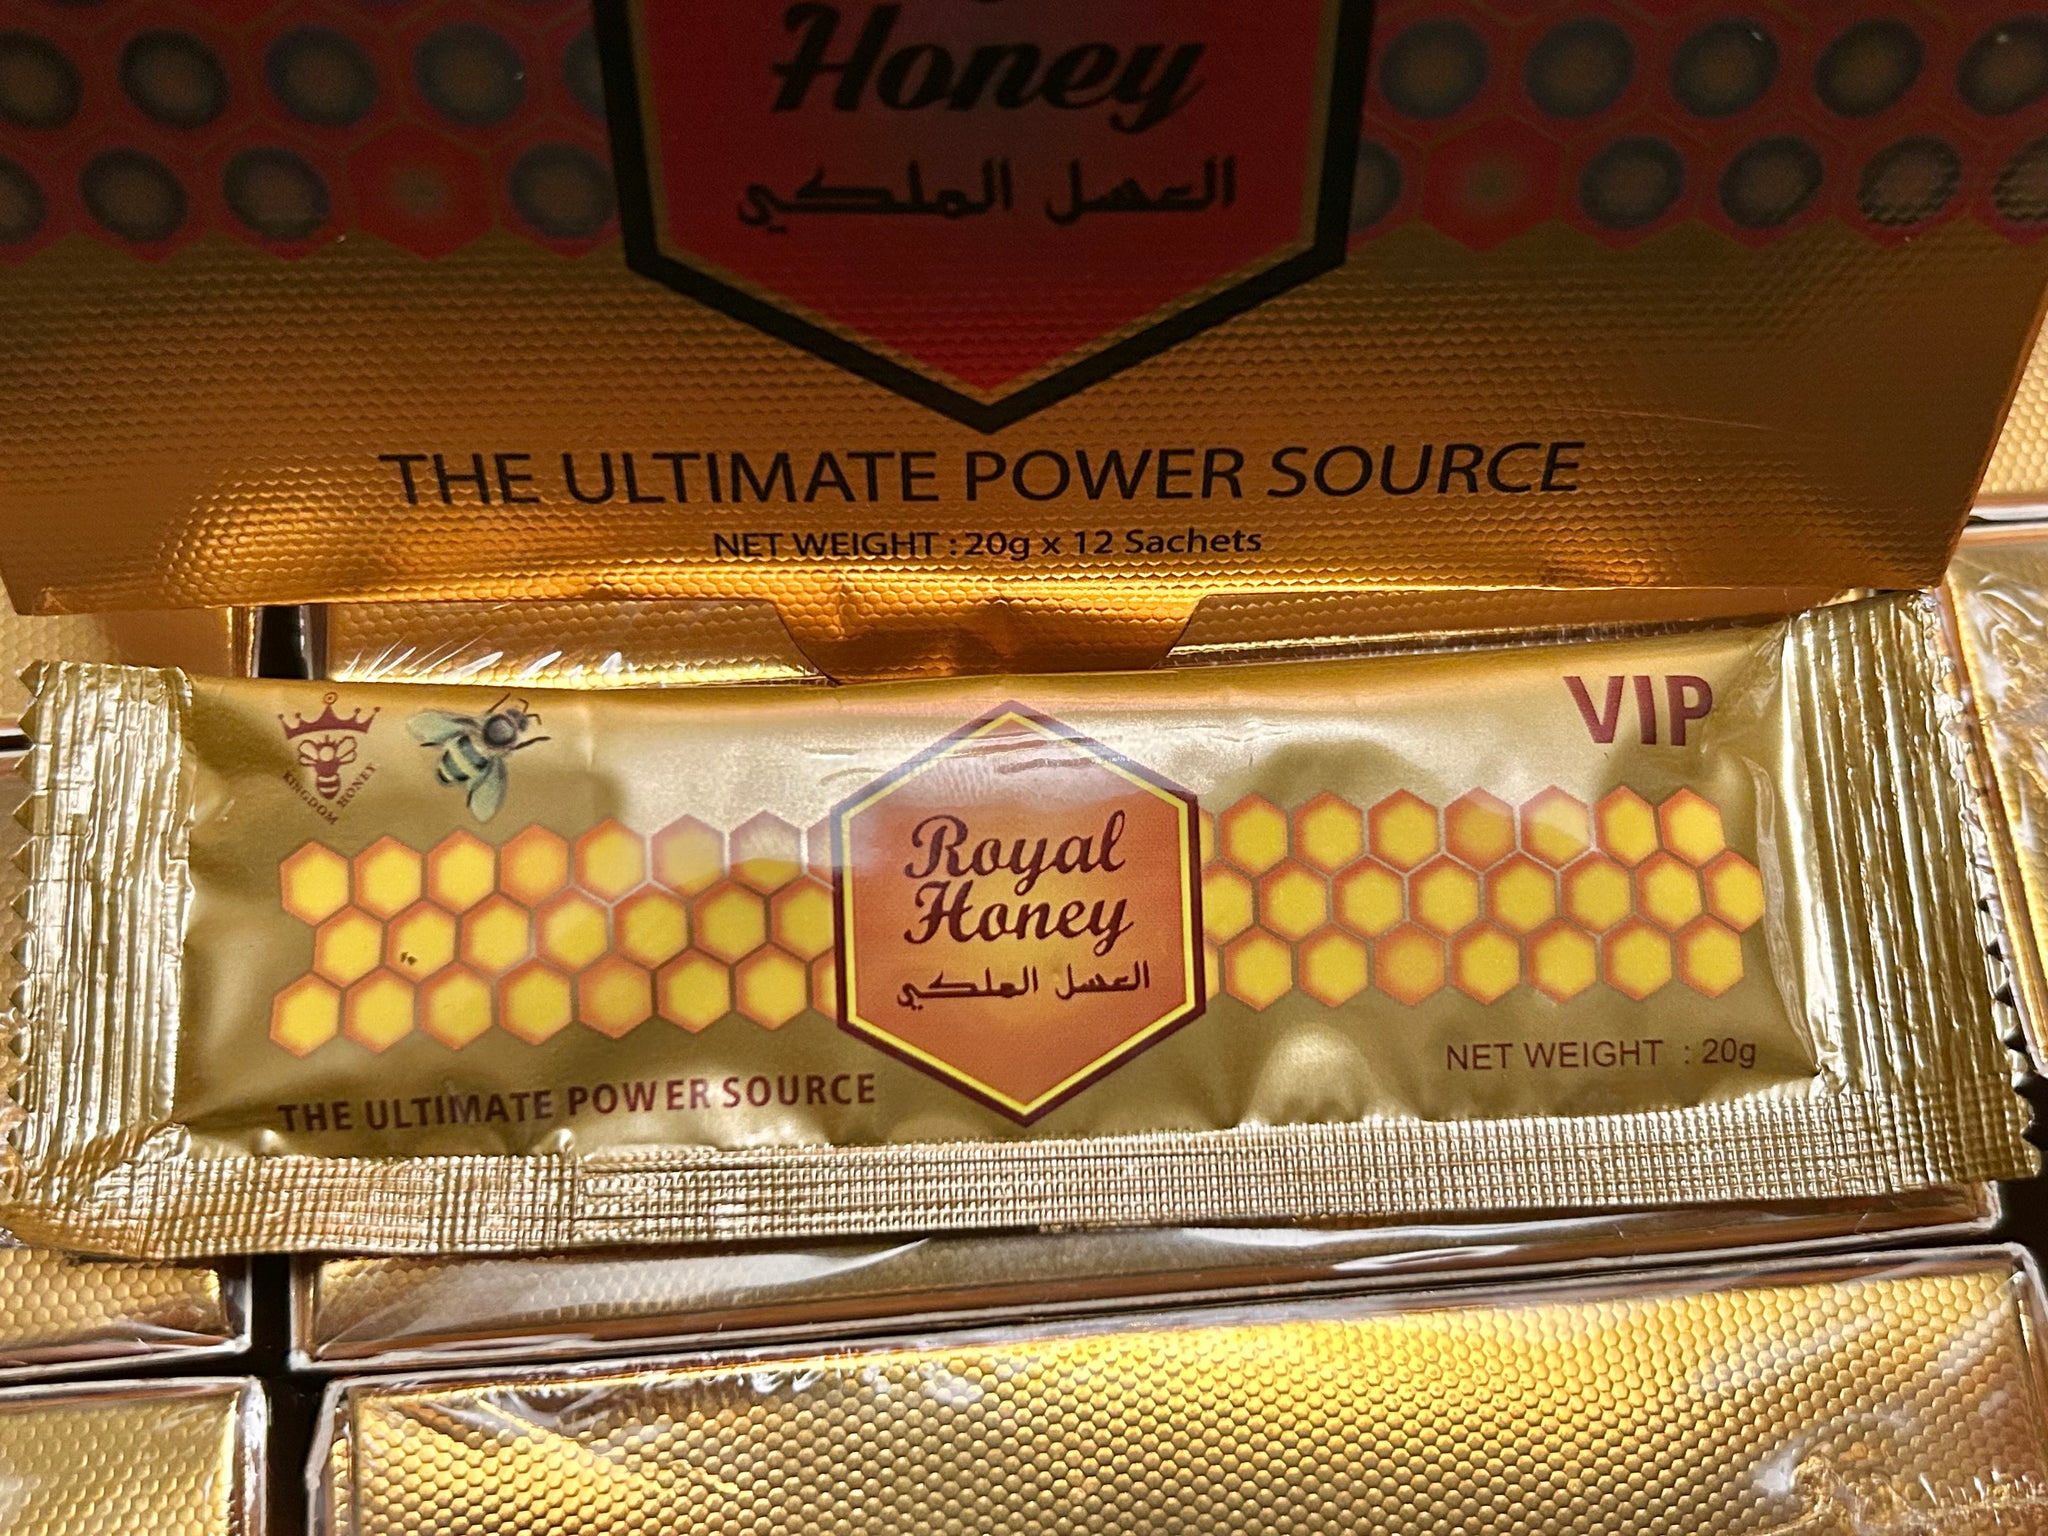 Royal Honey VIP - Boost Libido & Stamina